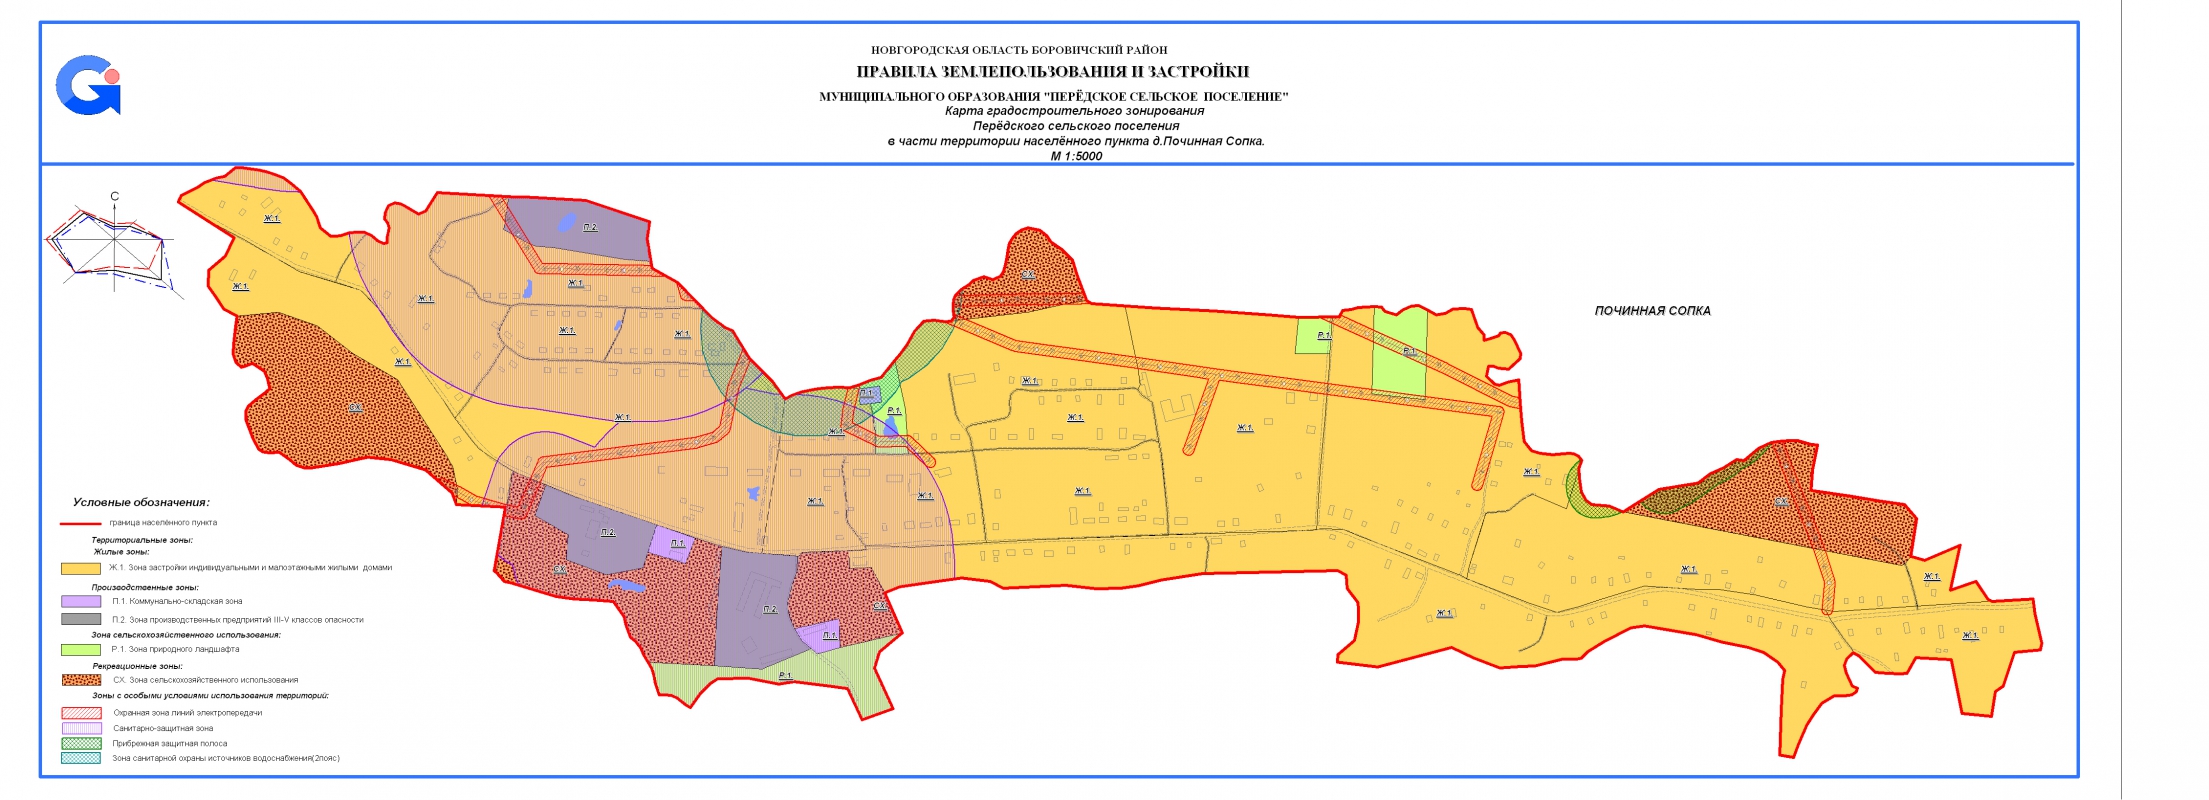 Карта градостроительного зонирования Передского сеольского поселения в части территории населенного пункта д. Починная Сопка